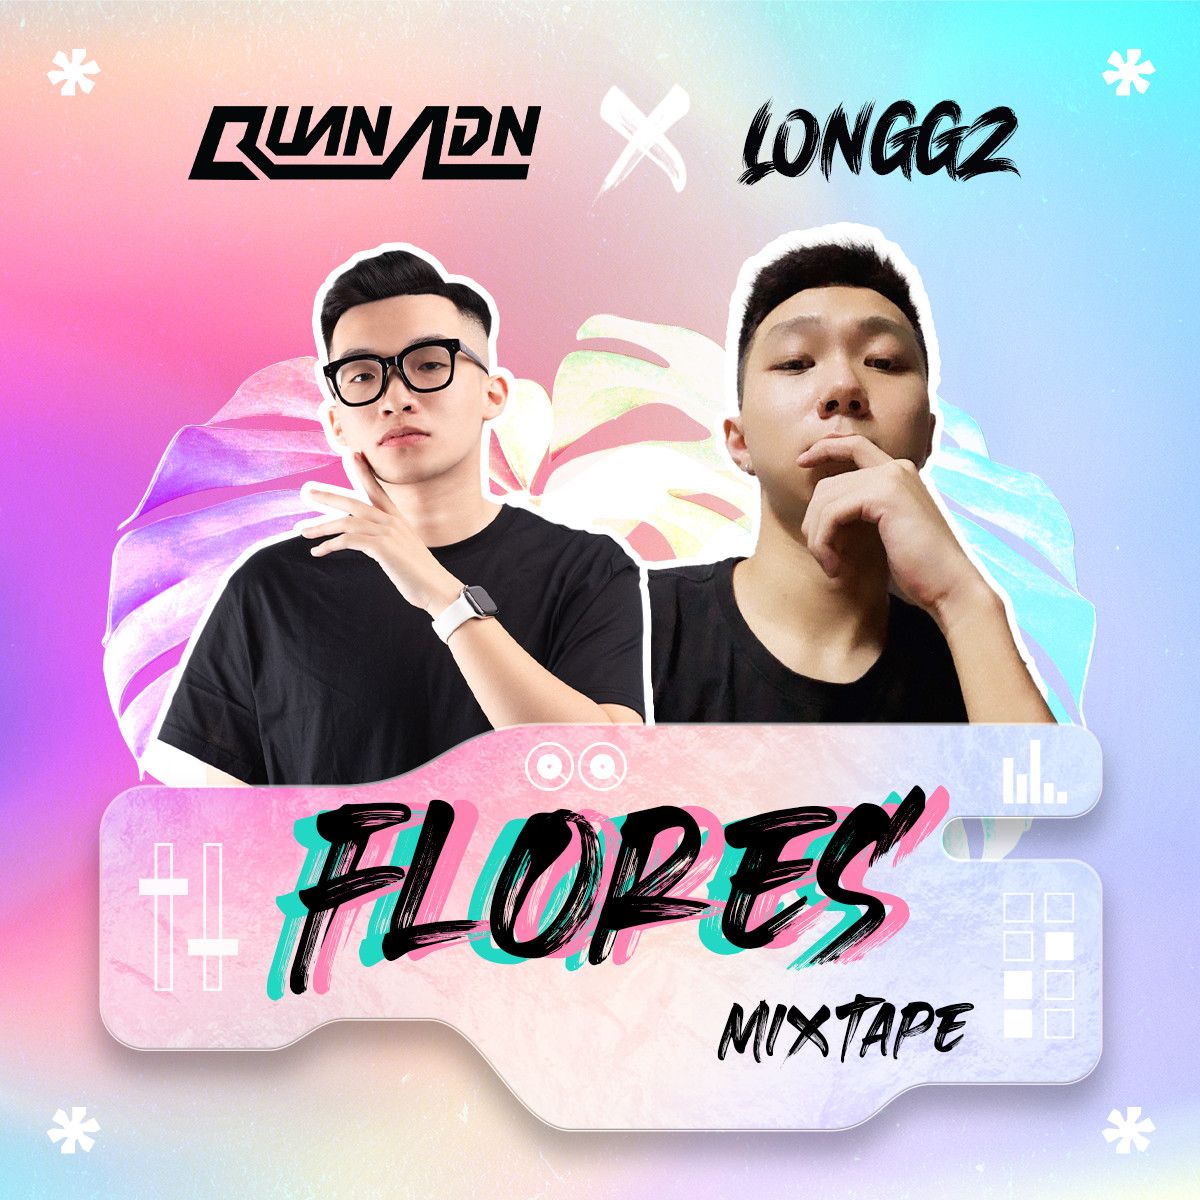 دانلود Mixtape - Flores by Quan ADN & LONGGZ